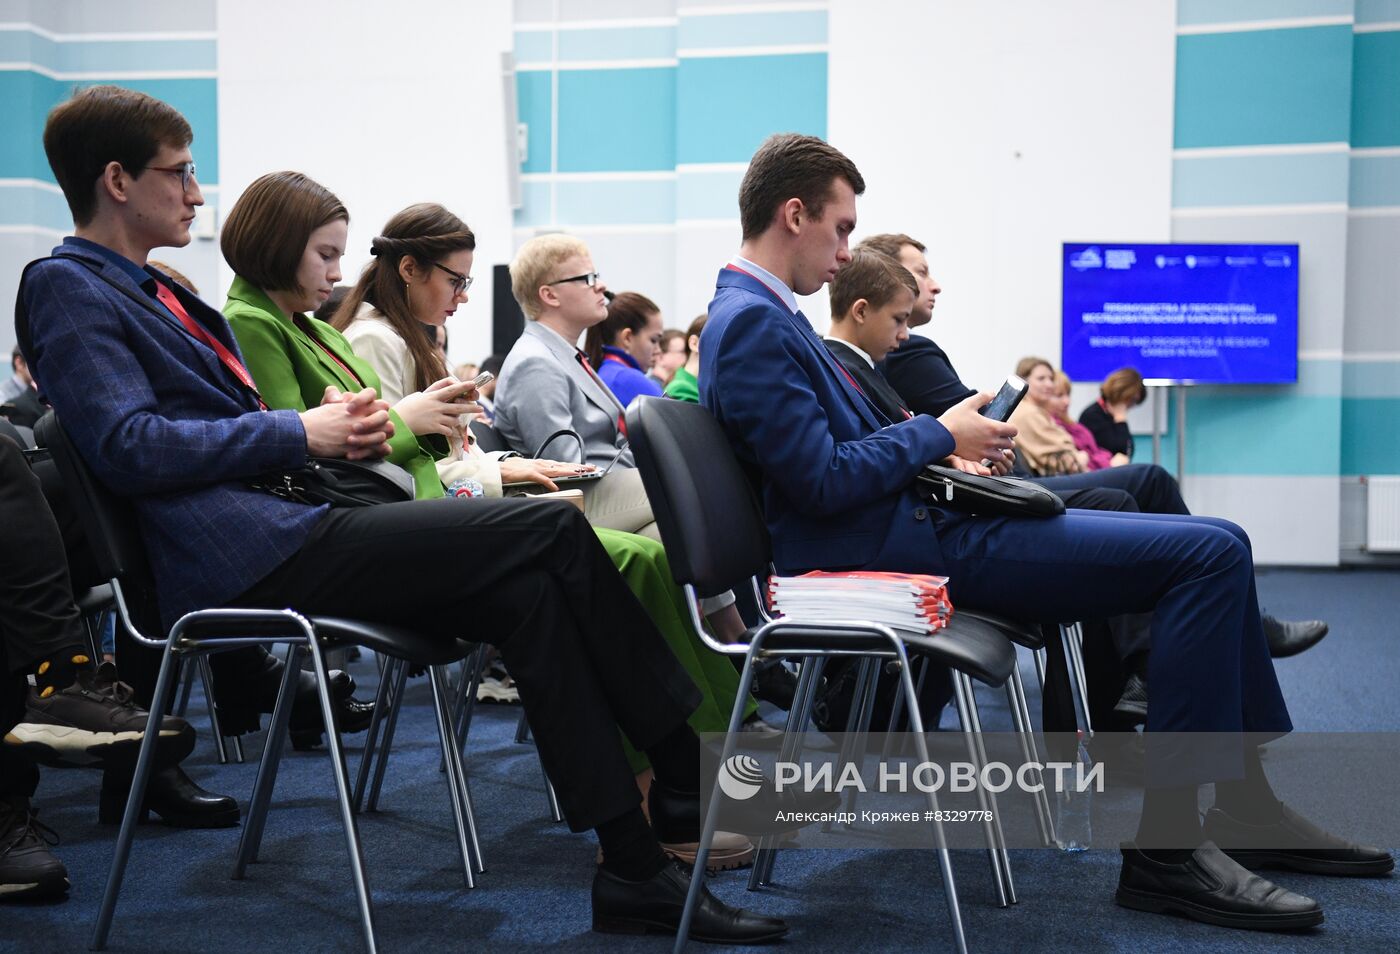 II КМУ-2022. Преимущества и перспективы исследовательской карьеры в России